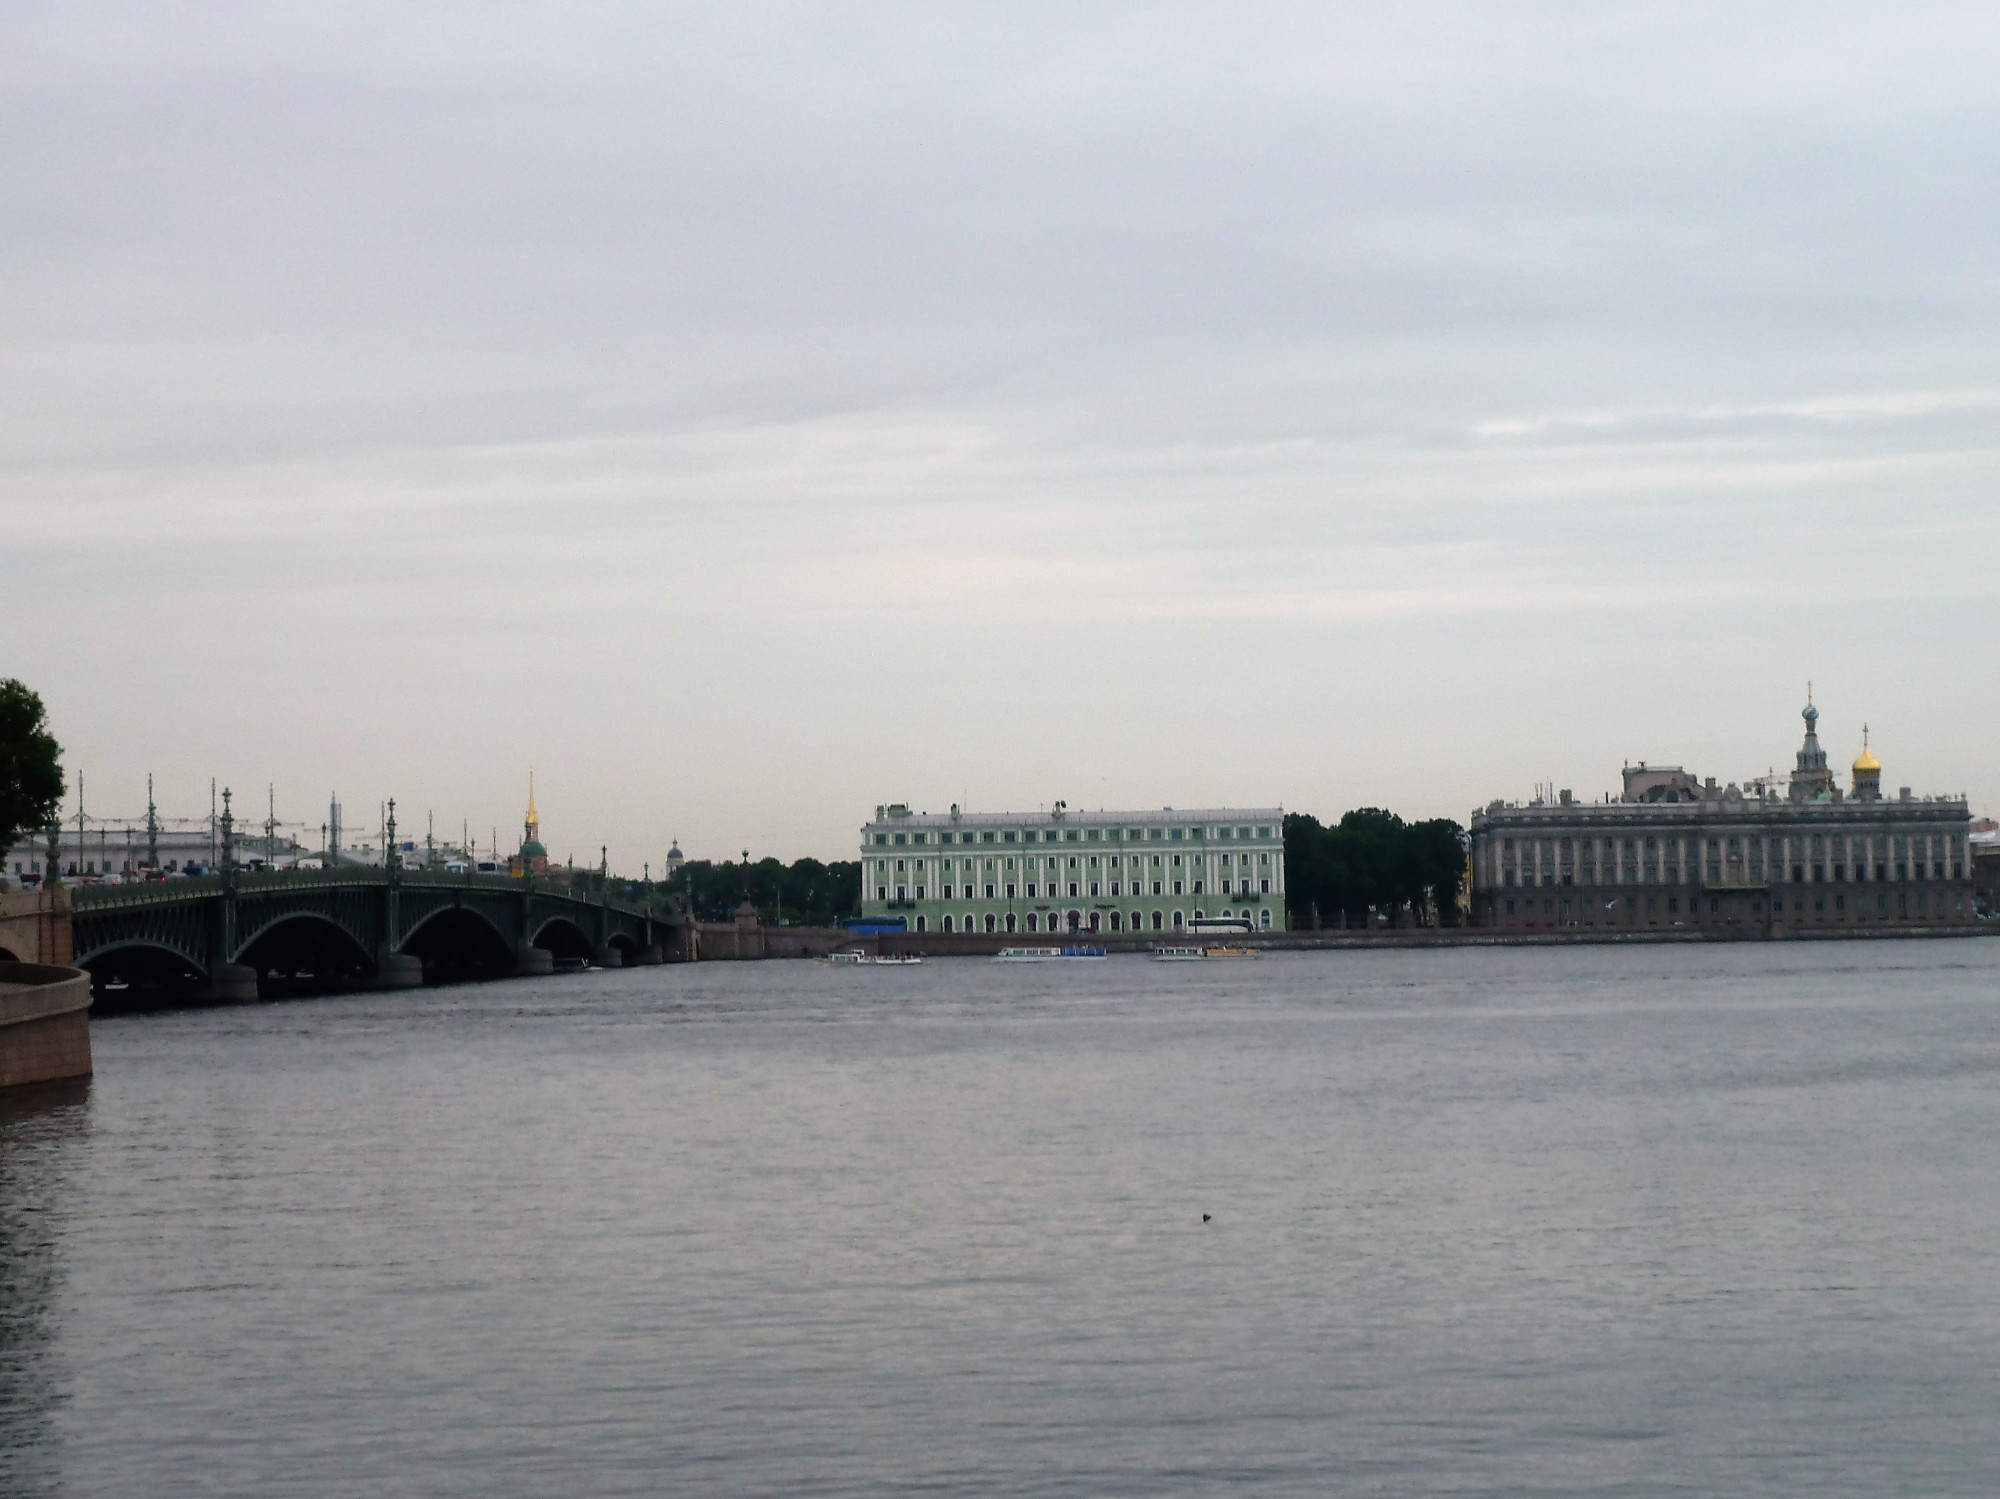 Palace Embankment